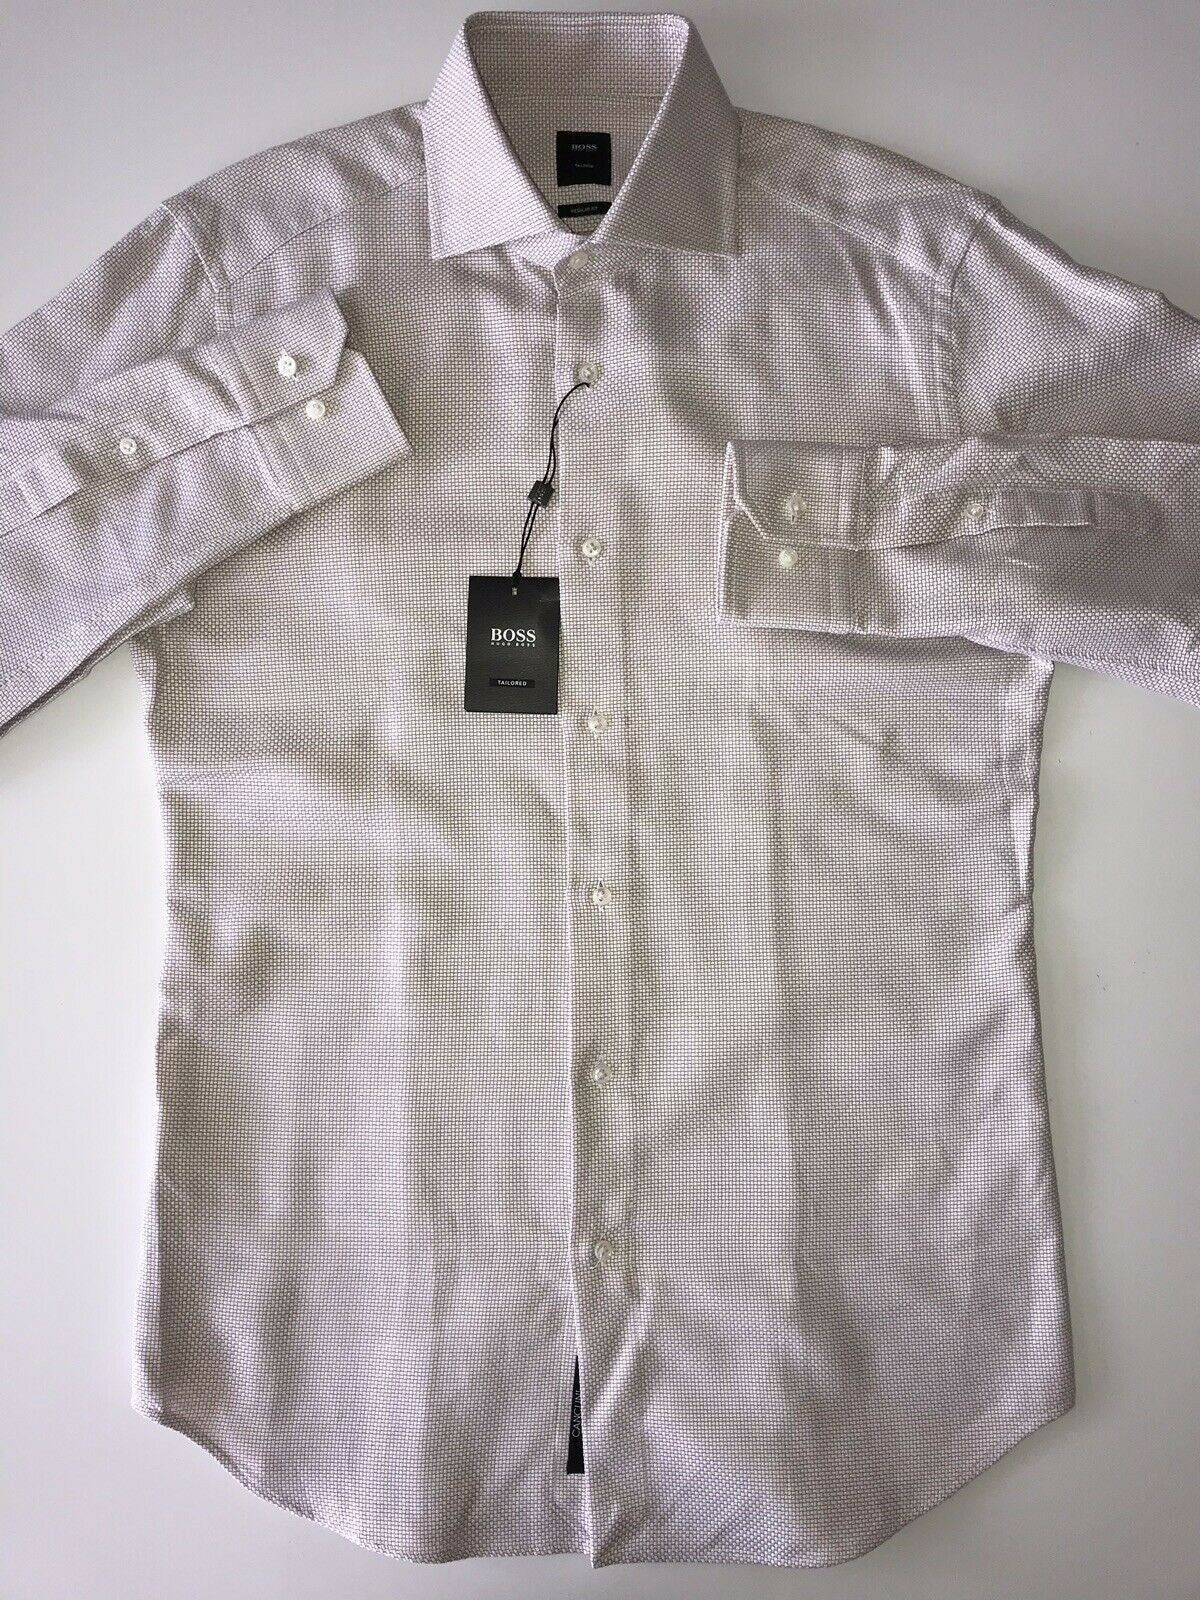 NWT $255 Hugo Boss Mens Tailored Regular Fit Cotton Beige Dress Shirt Size 38/15